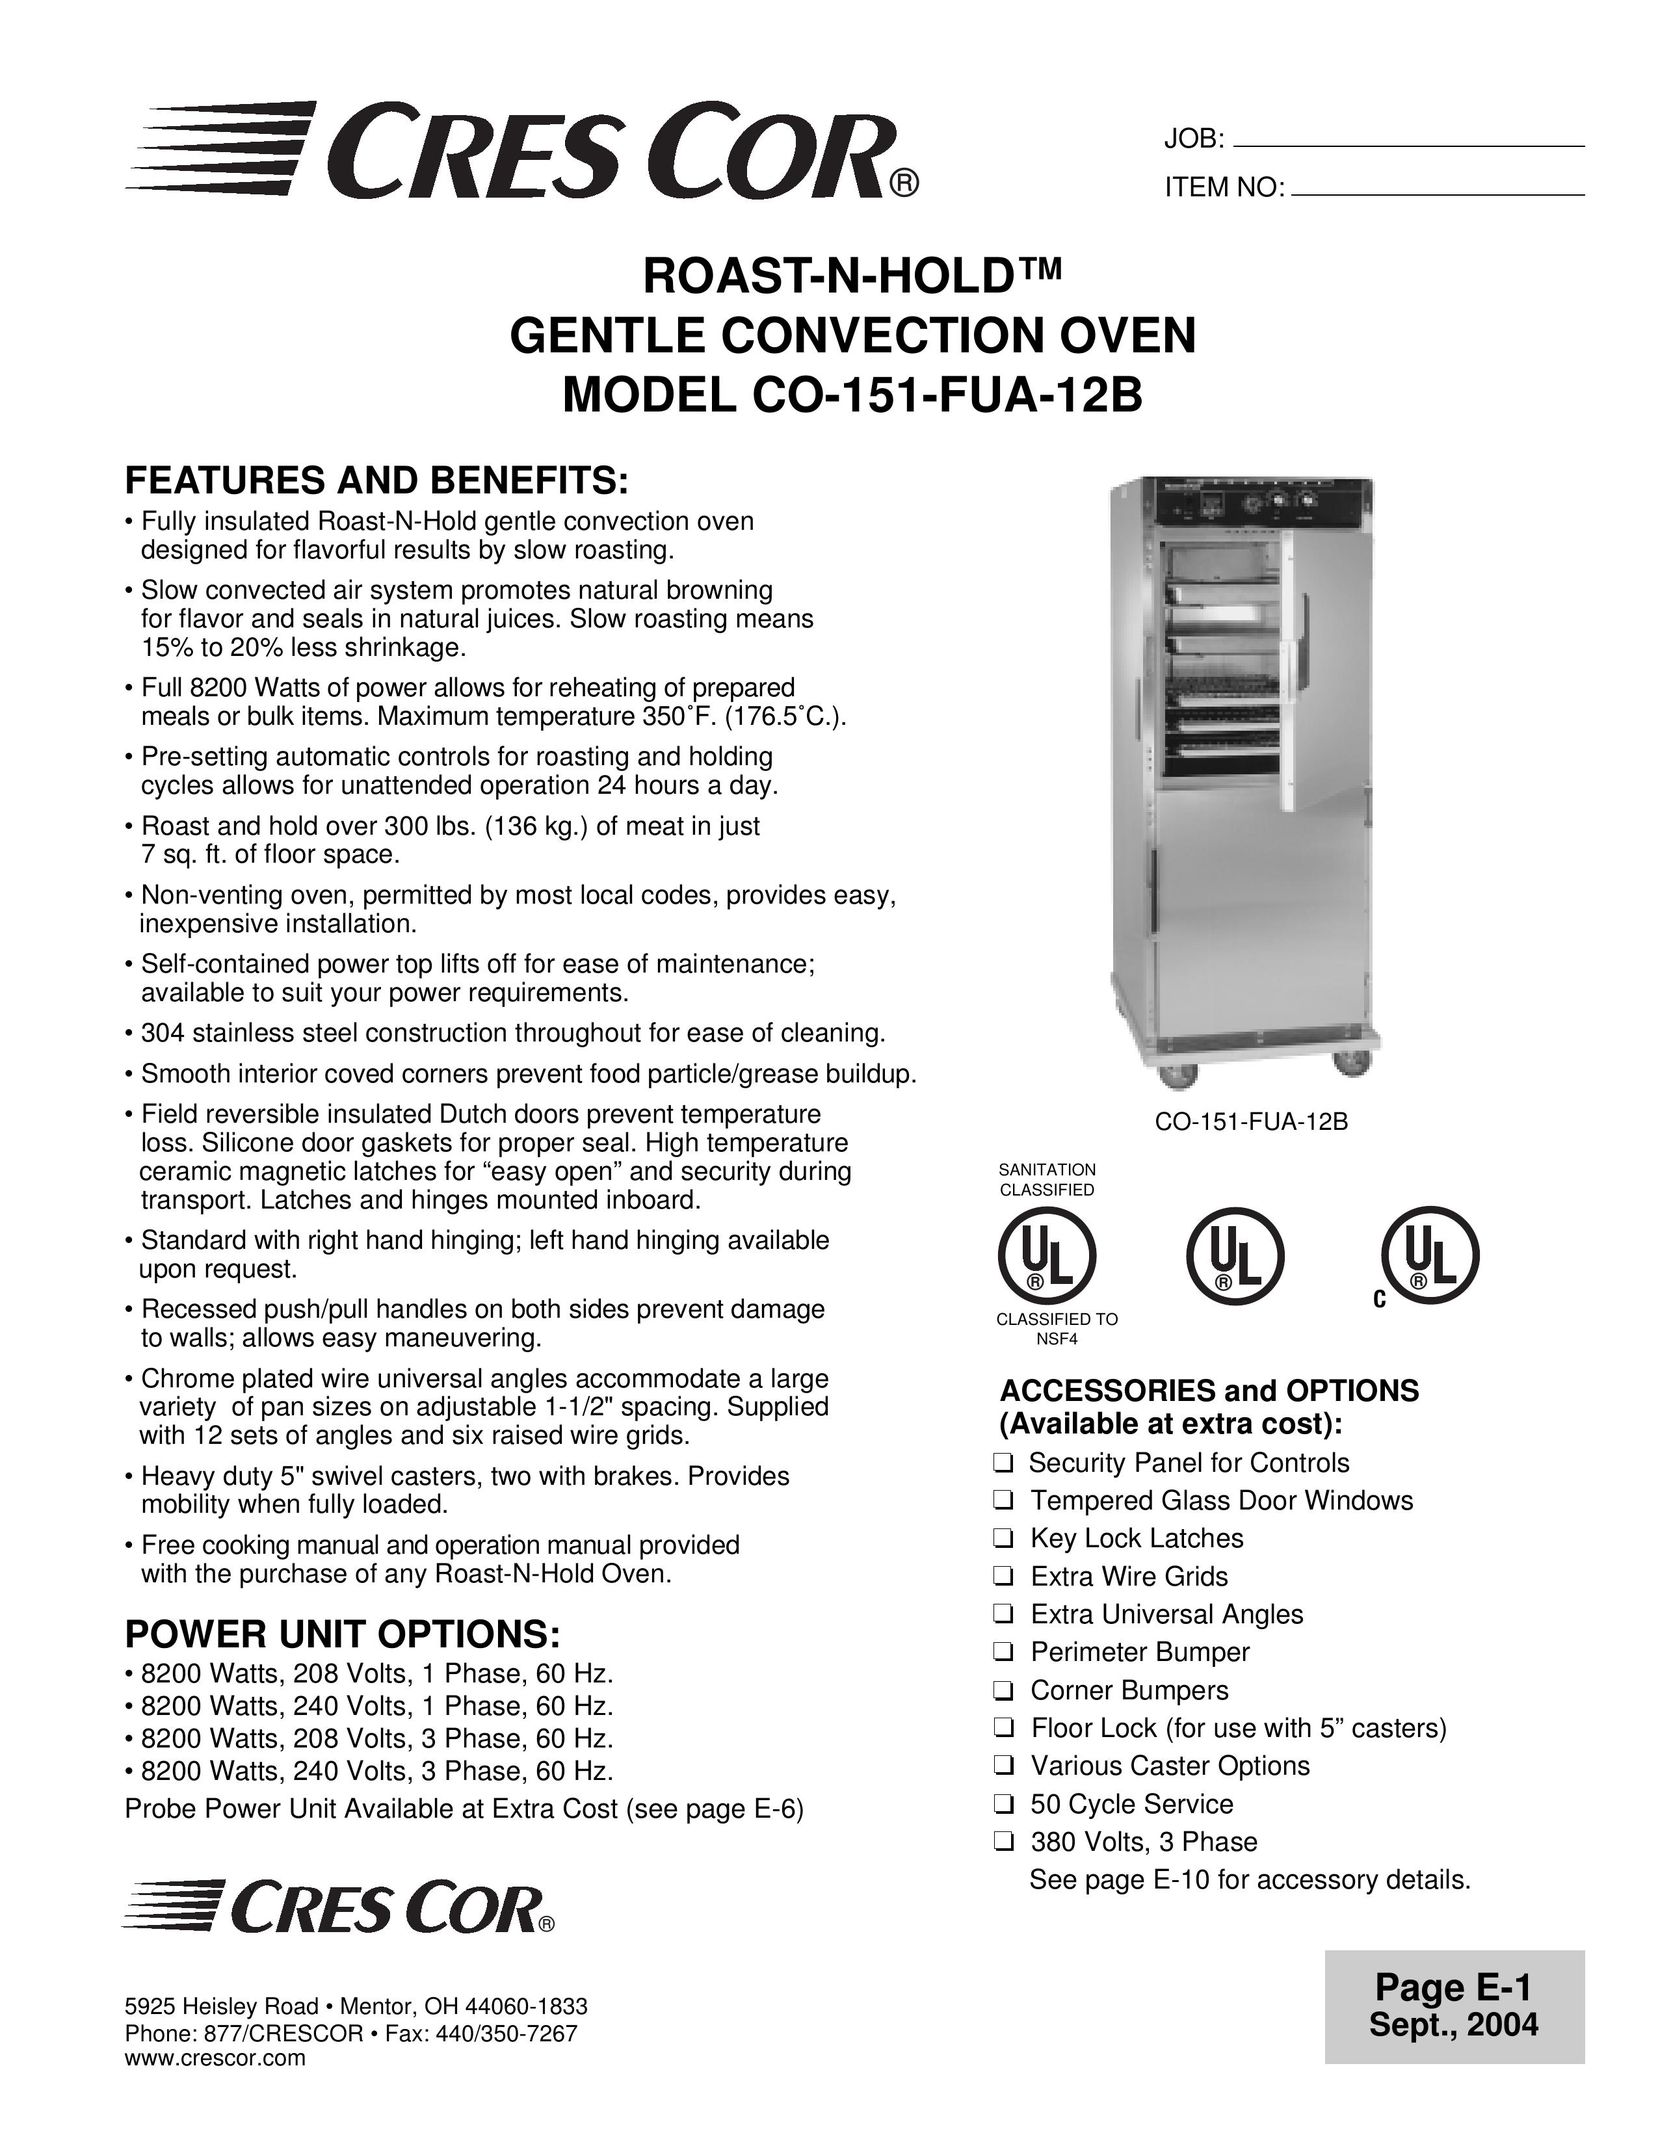 Cres Cor CO-151-FUA-12B Convection Oven User Manual